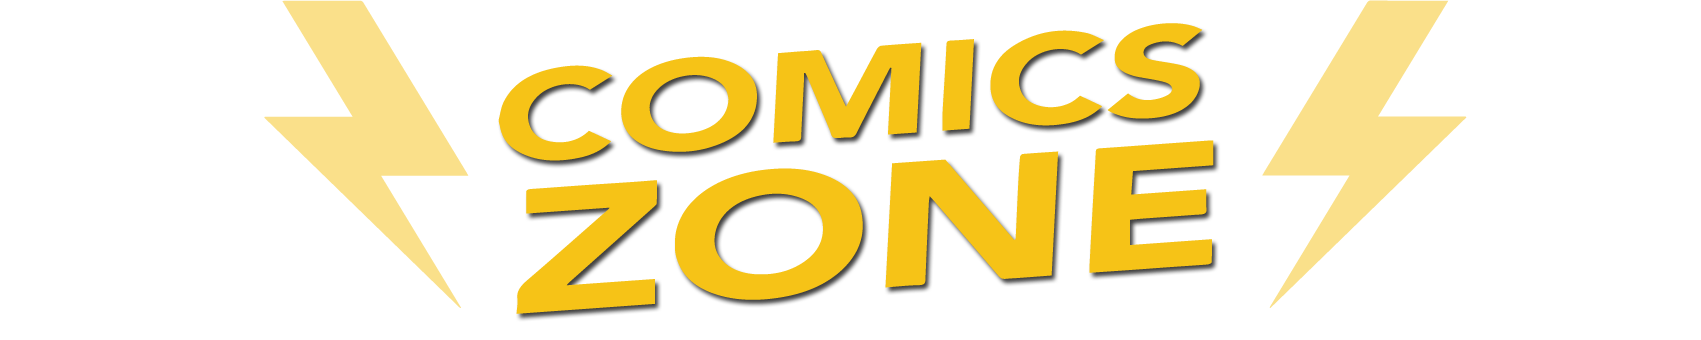 Comics Zone